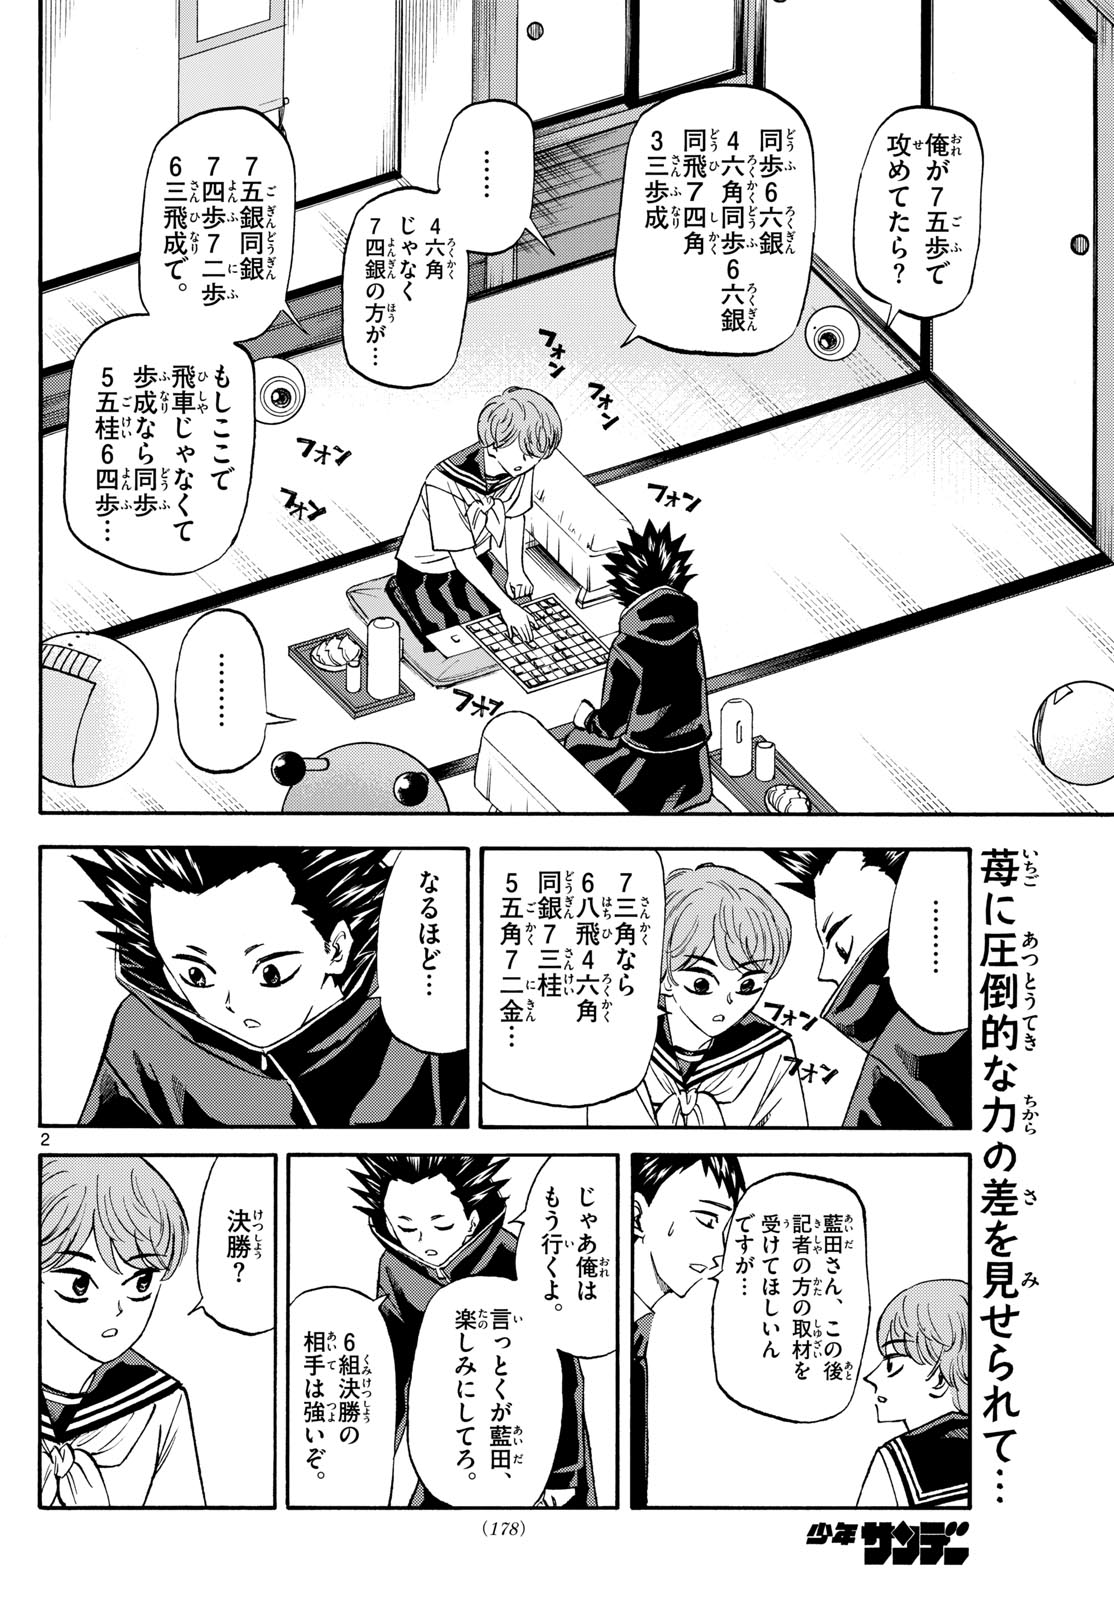 Tatsu to Ichigo - Chapter 192 - Page 2